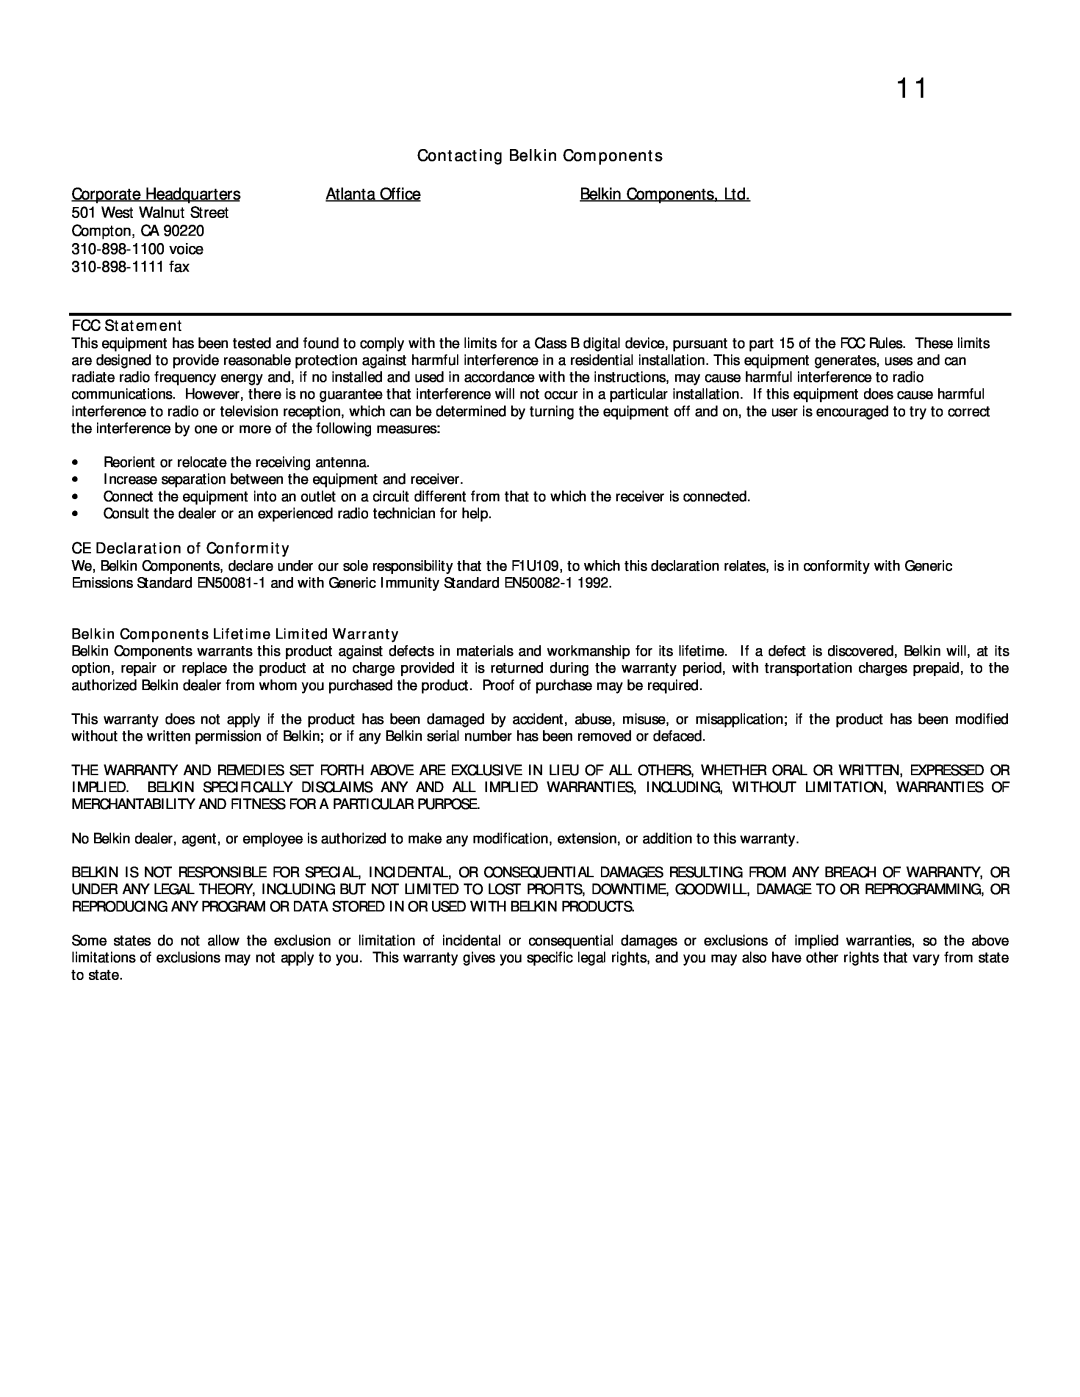 Belkin F1U109 FCC Statement, CE Declaration of Conformity, Belkin Components Lifetime Limited Warranty, Atlanta Office 